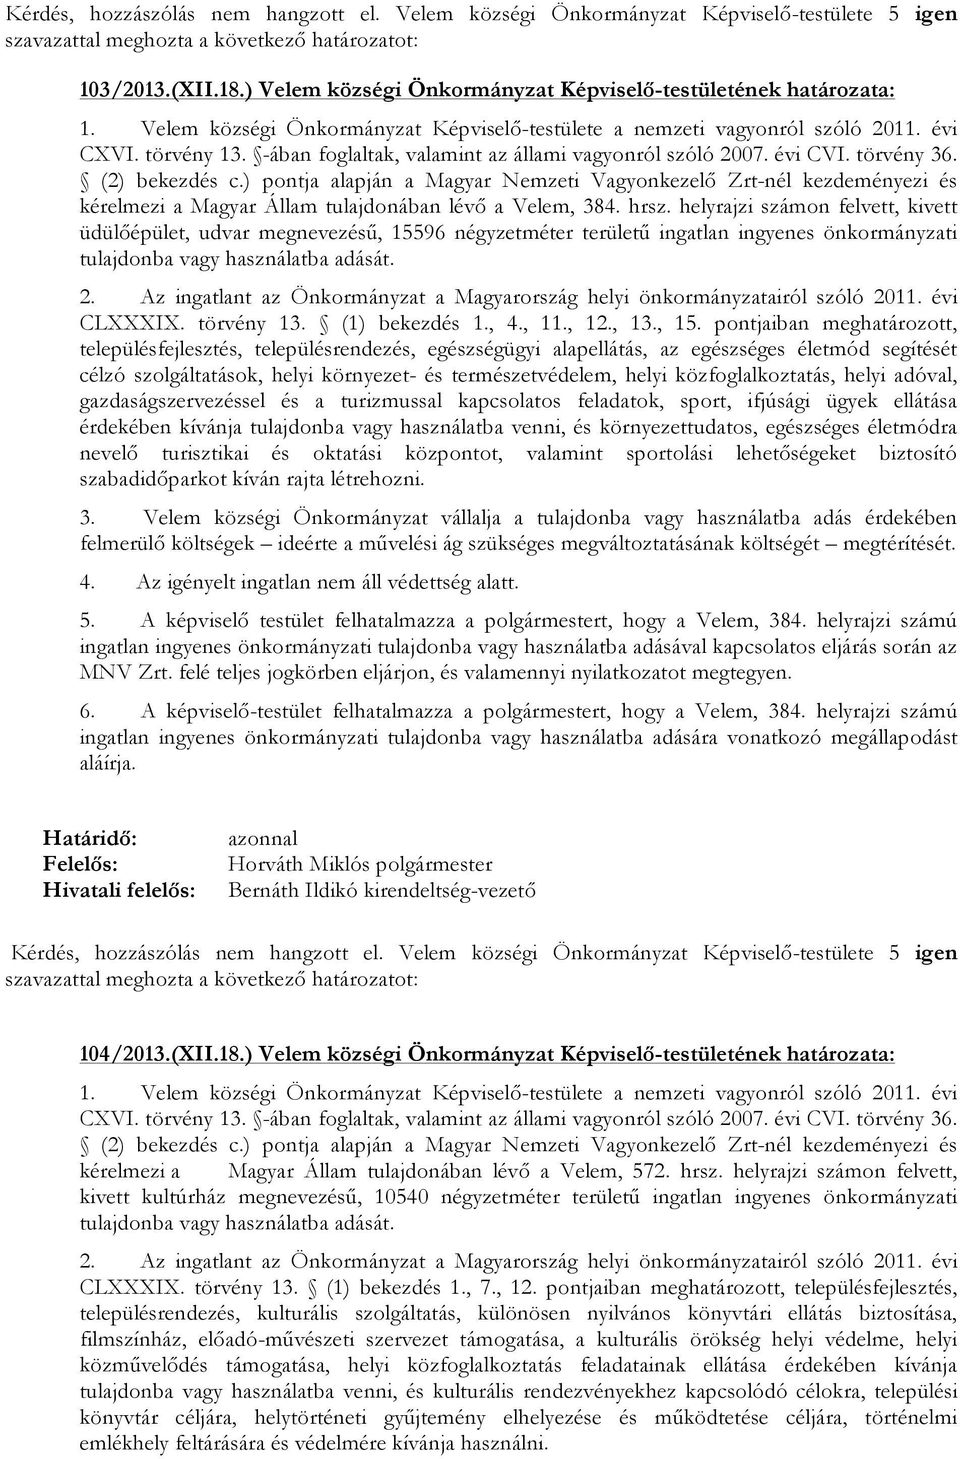 ) pontja alapján a Magyar Nemzeti Vagyonkezelő Zrt-nél kezdeményezi és kérelmezi a Magyar Állam tulajdonában lévő a Velem, 384. hrsz.